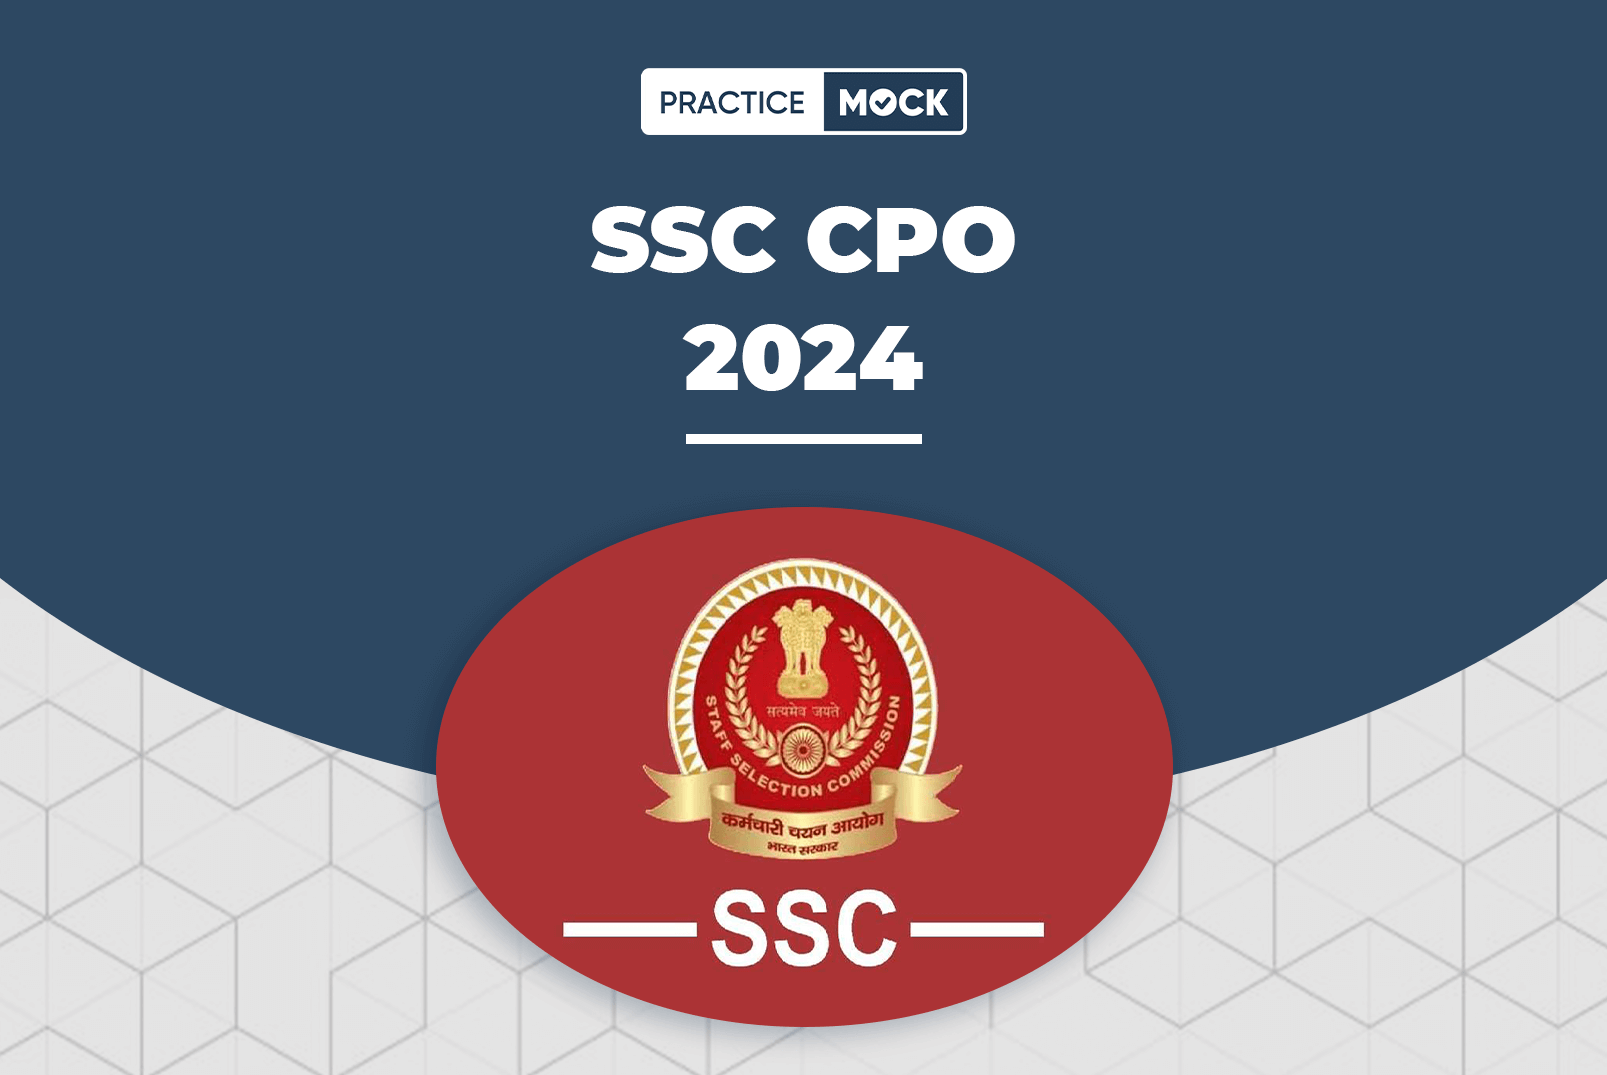 SSC CPO 2024